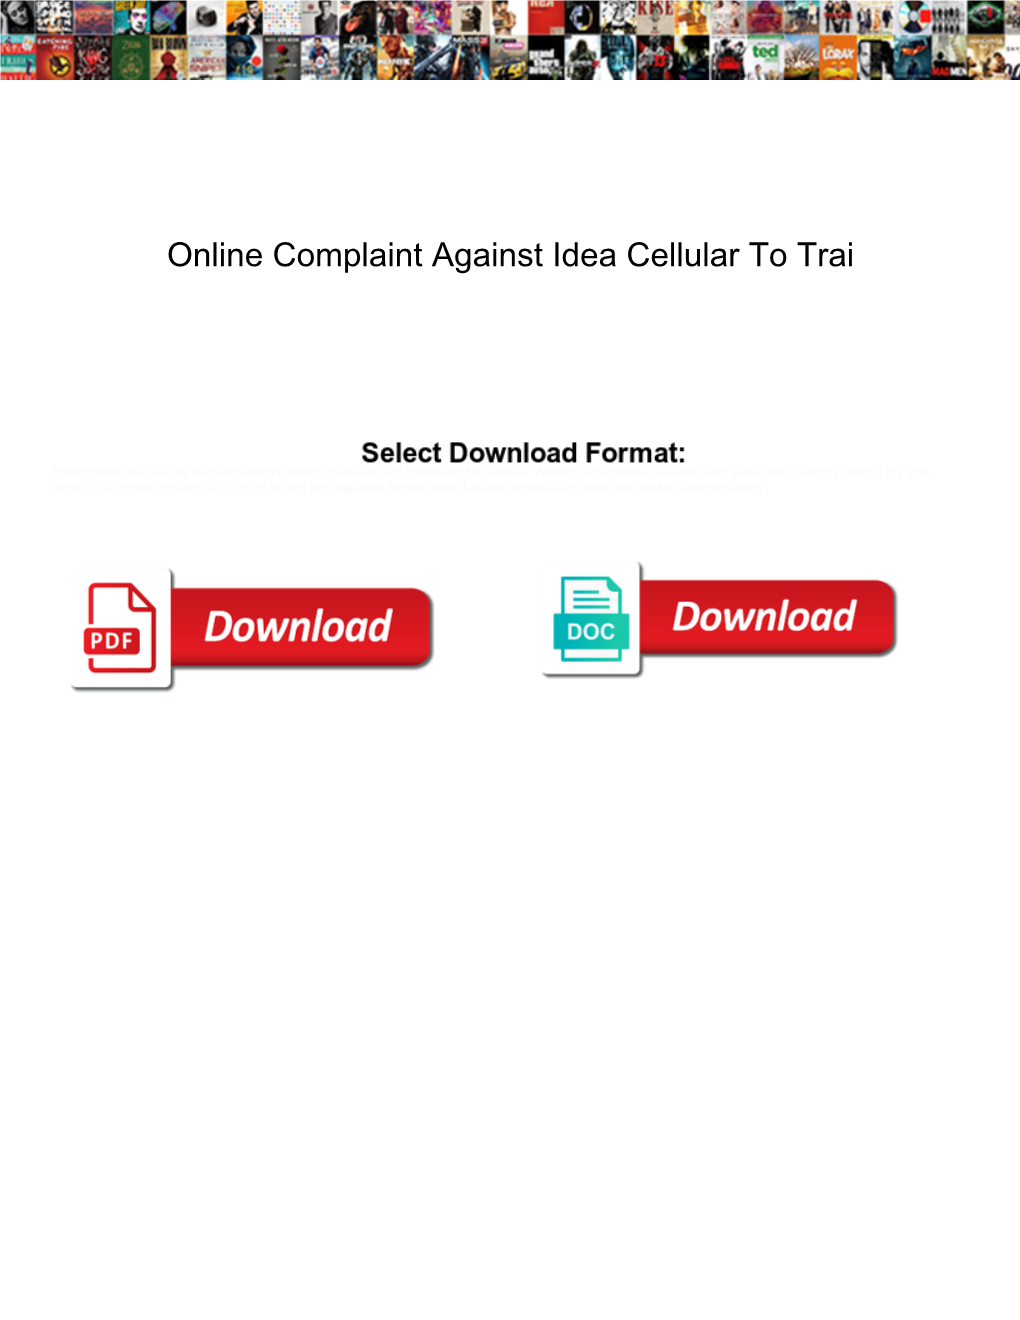 Online Complaint Against Idea Cellular to Trai